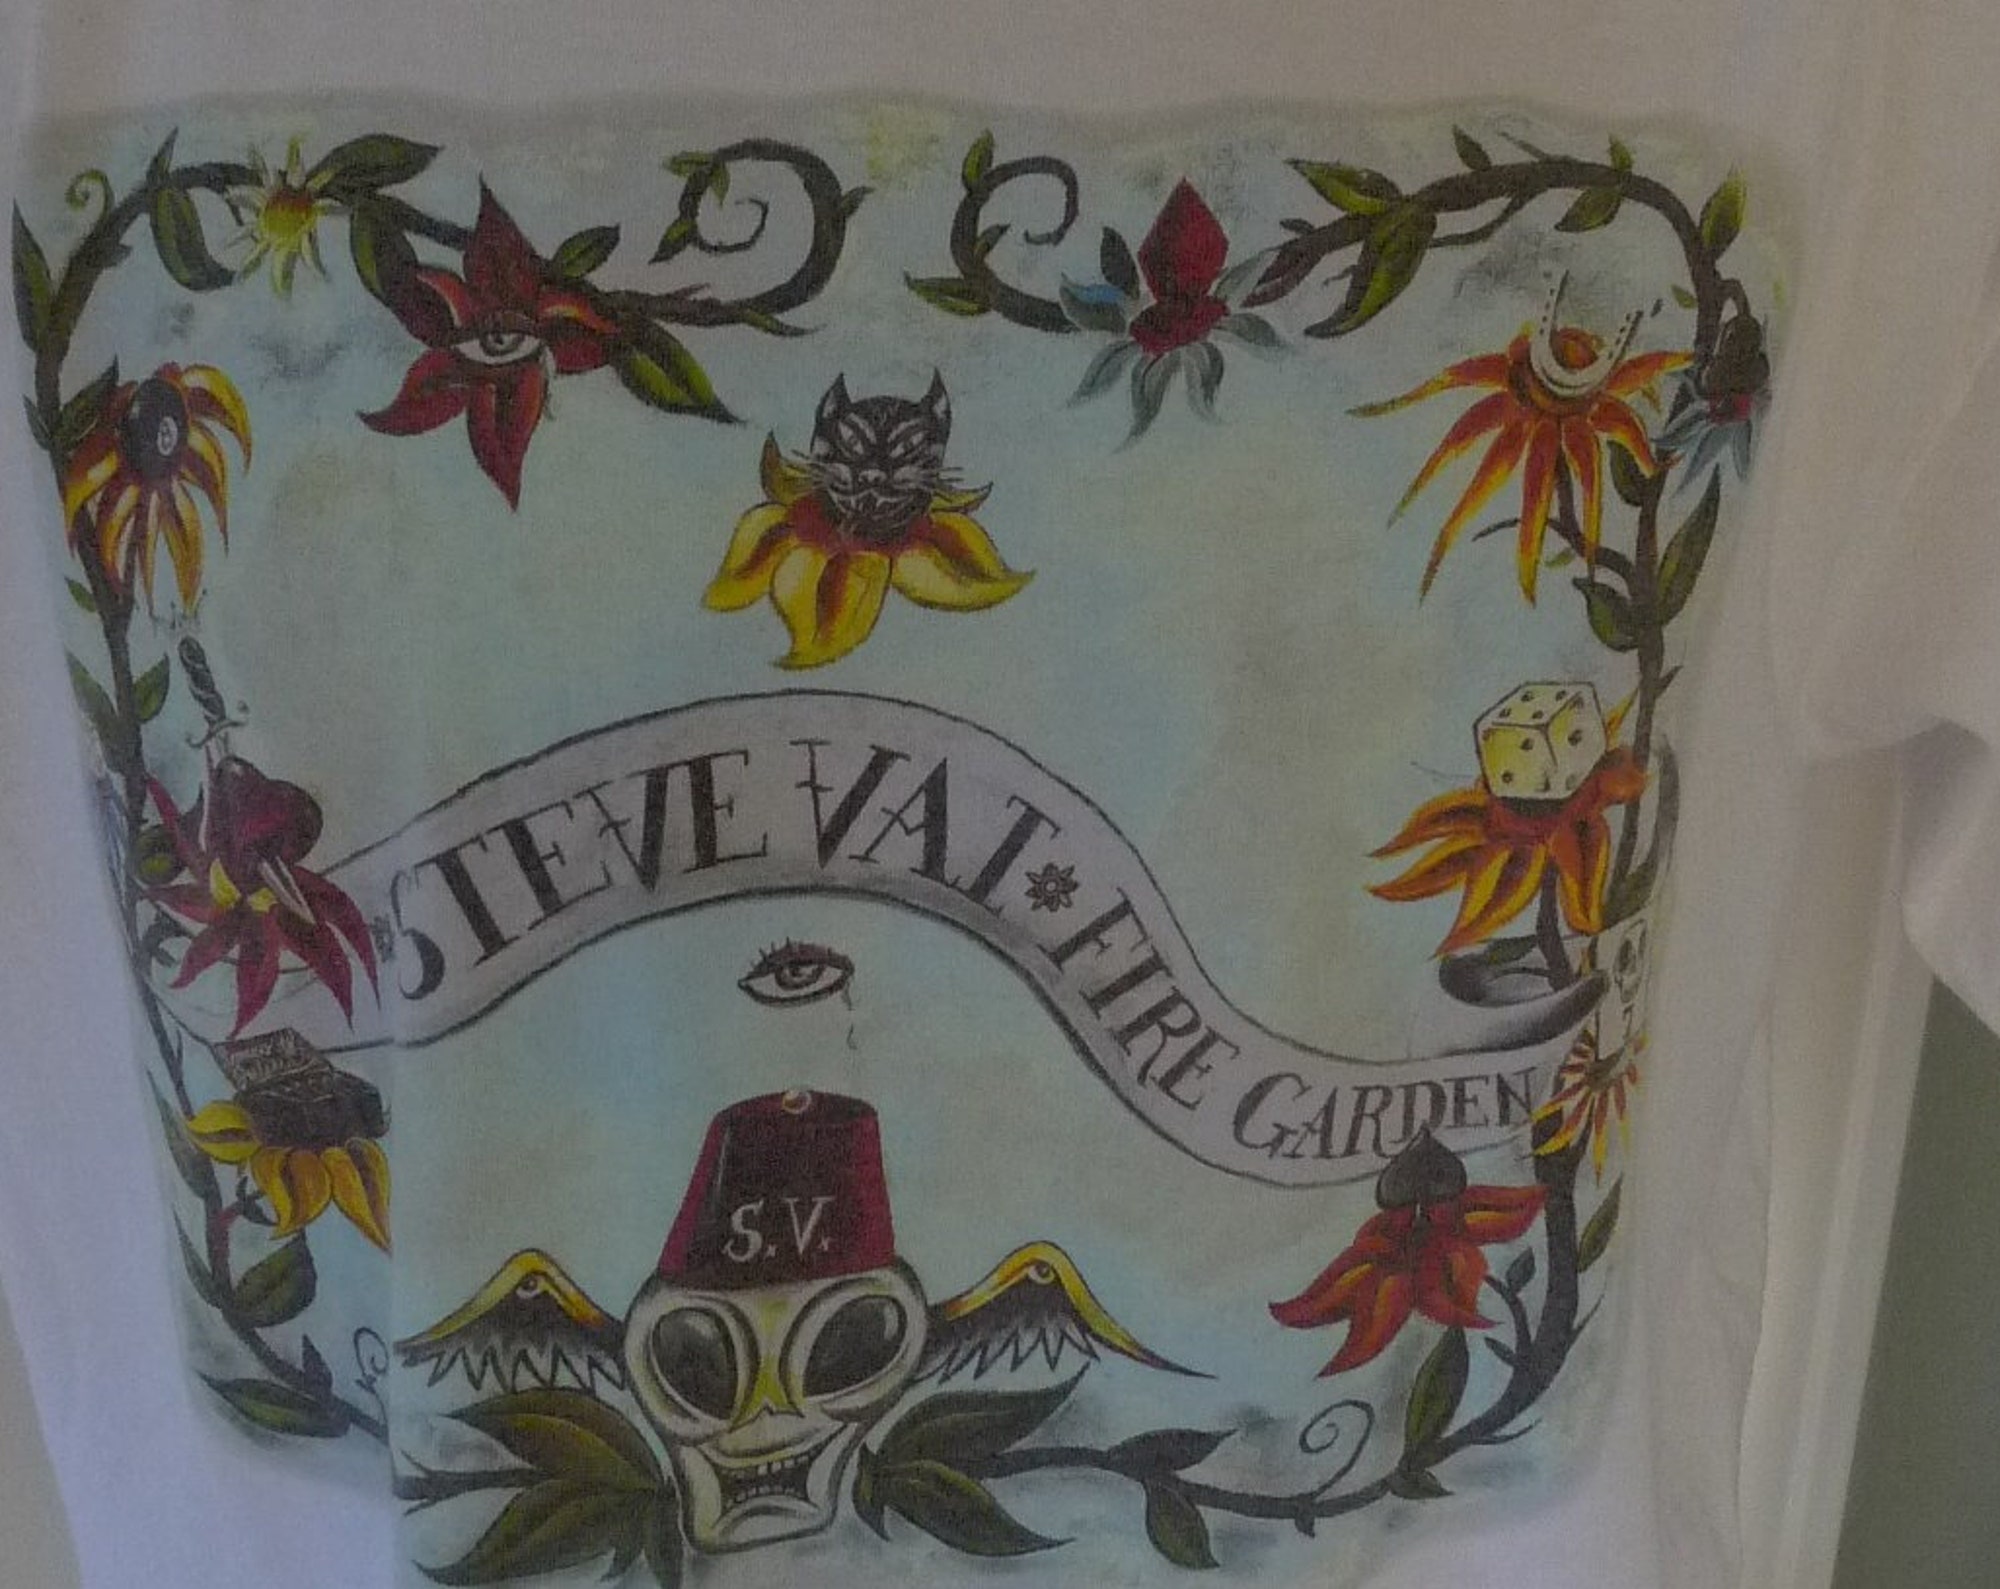 1996 Steve Vai Concert Shirt